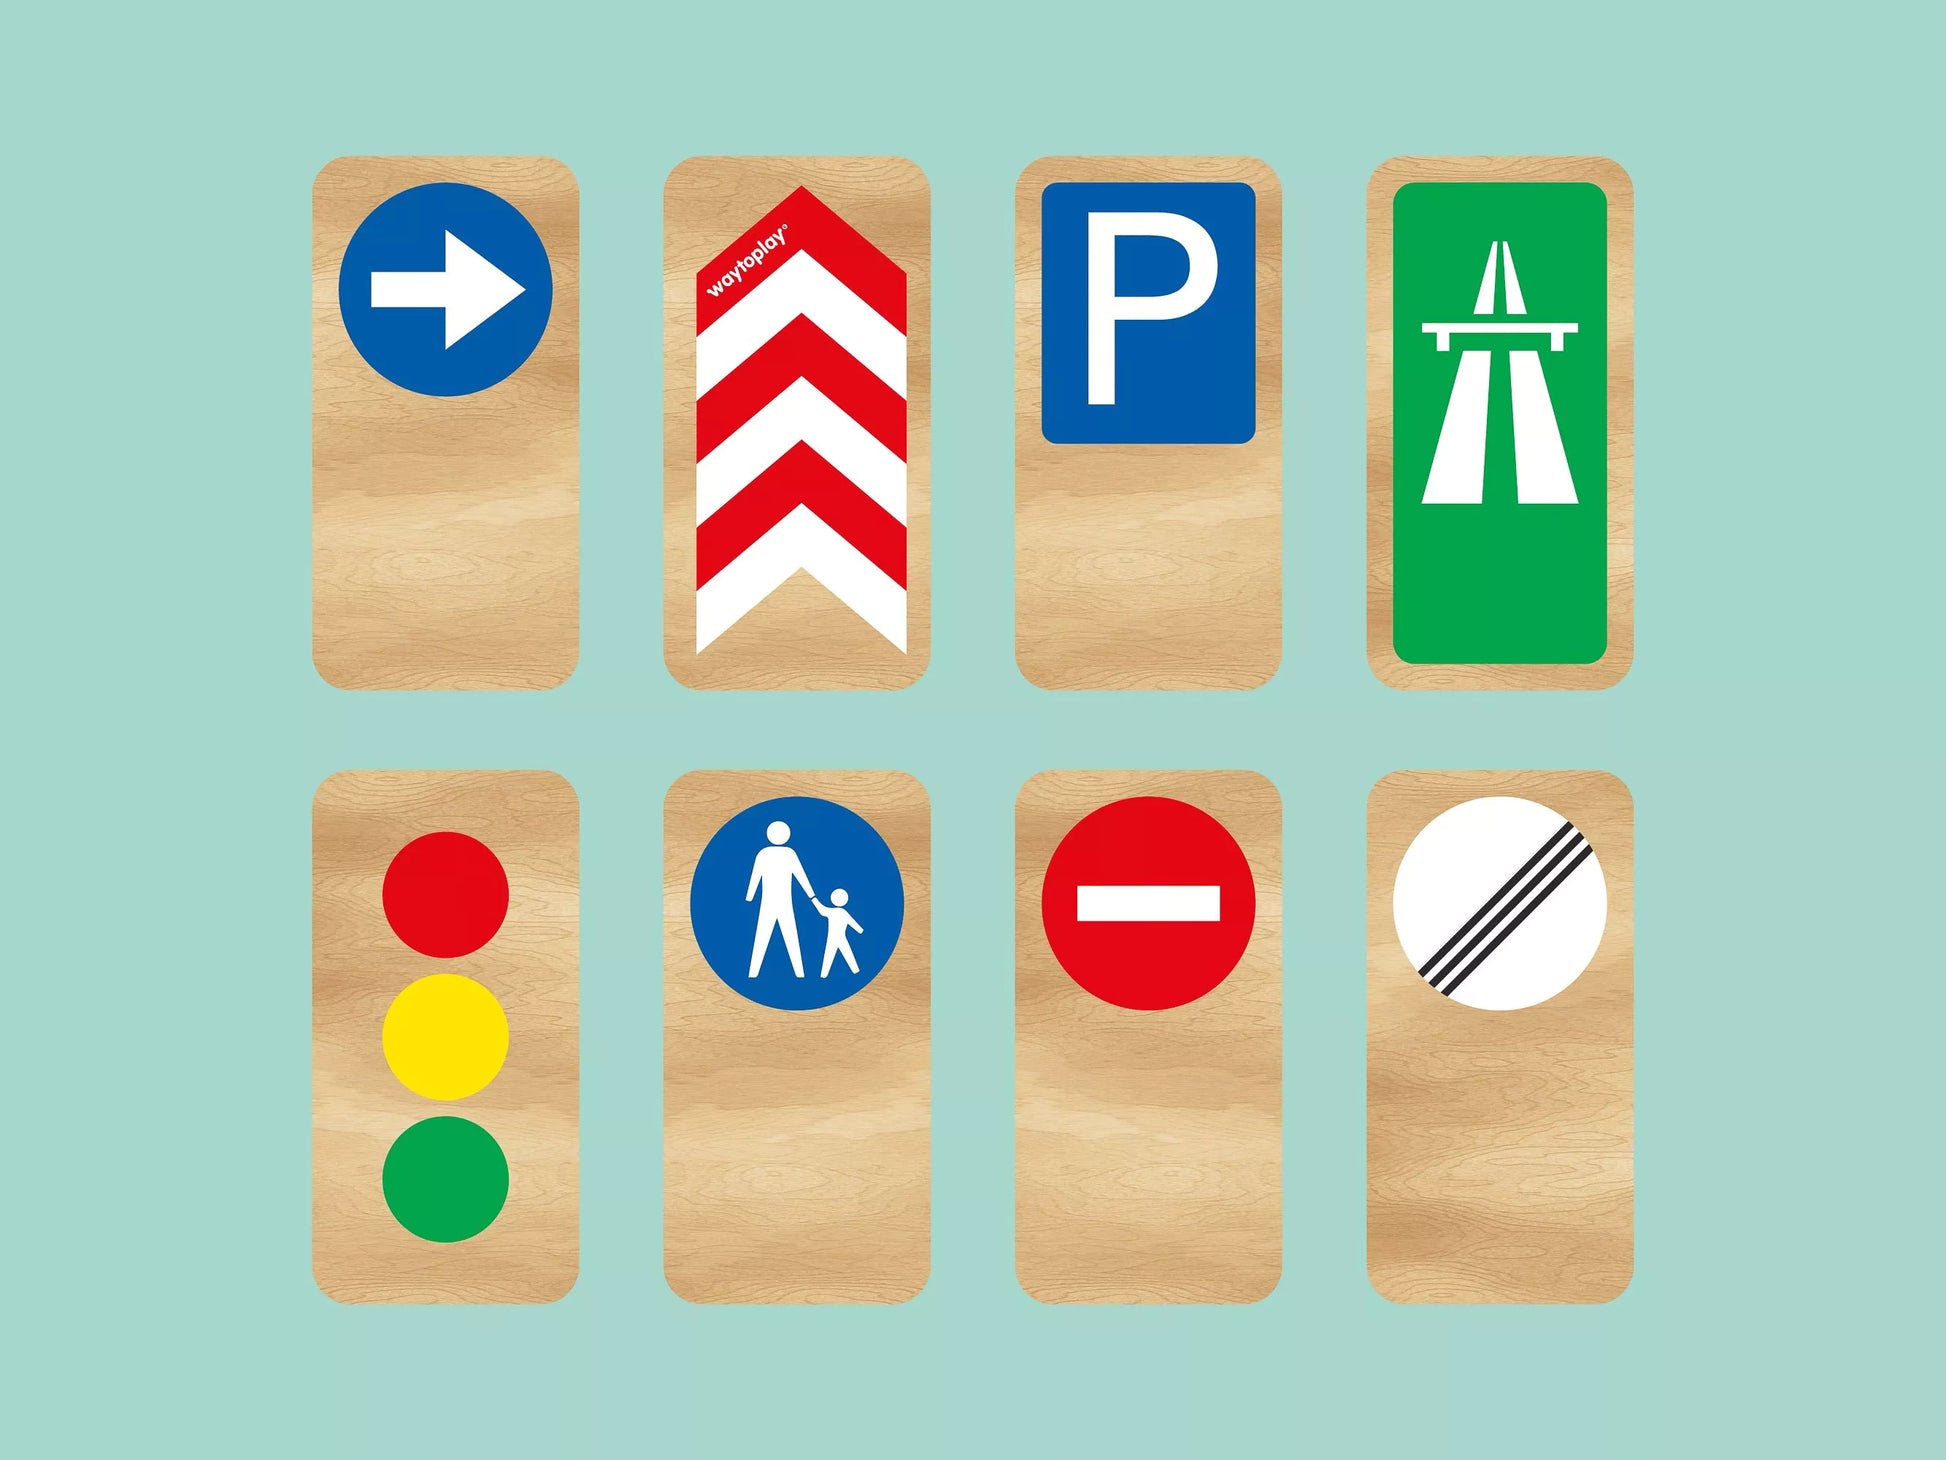 Route Prioritaire' jouet panneau de signalisation bois